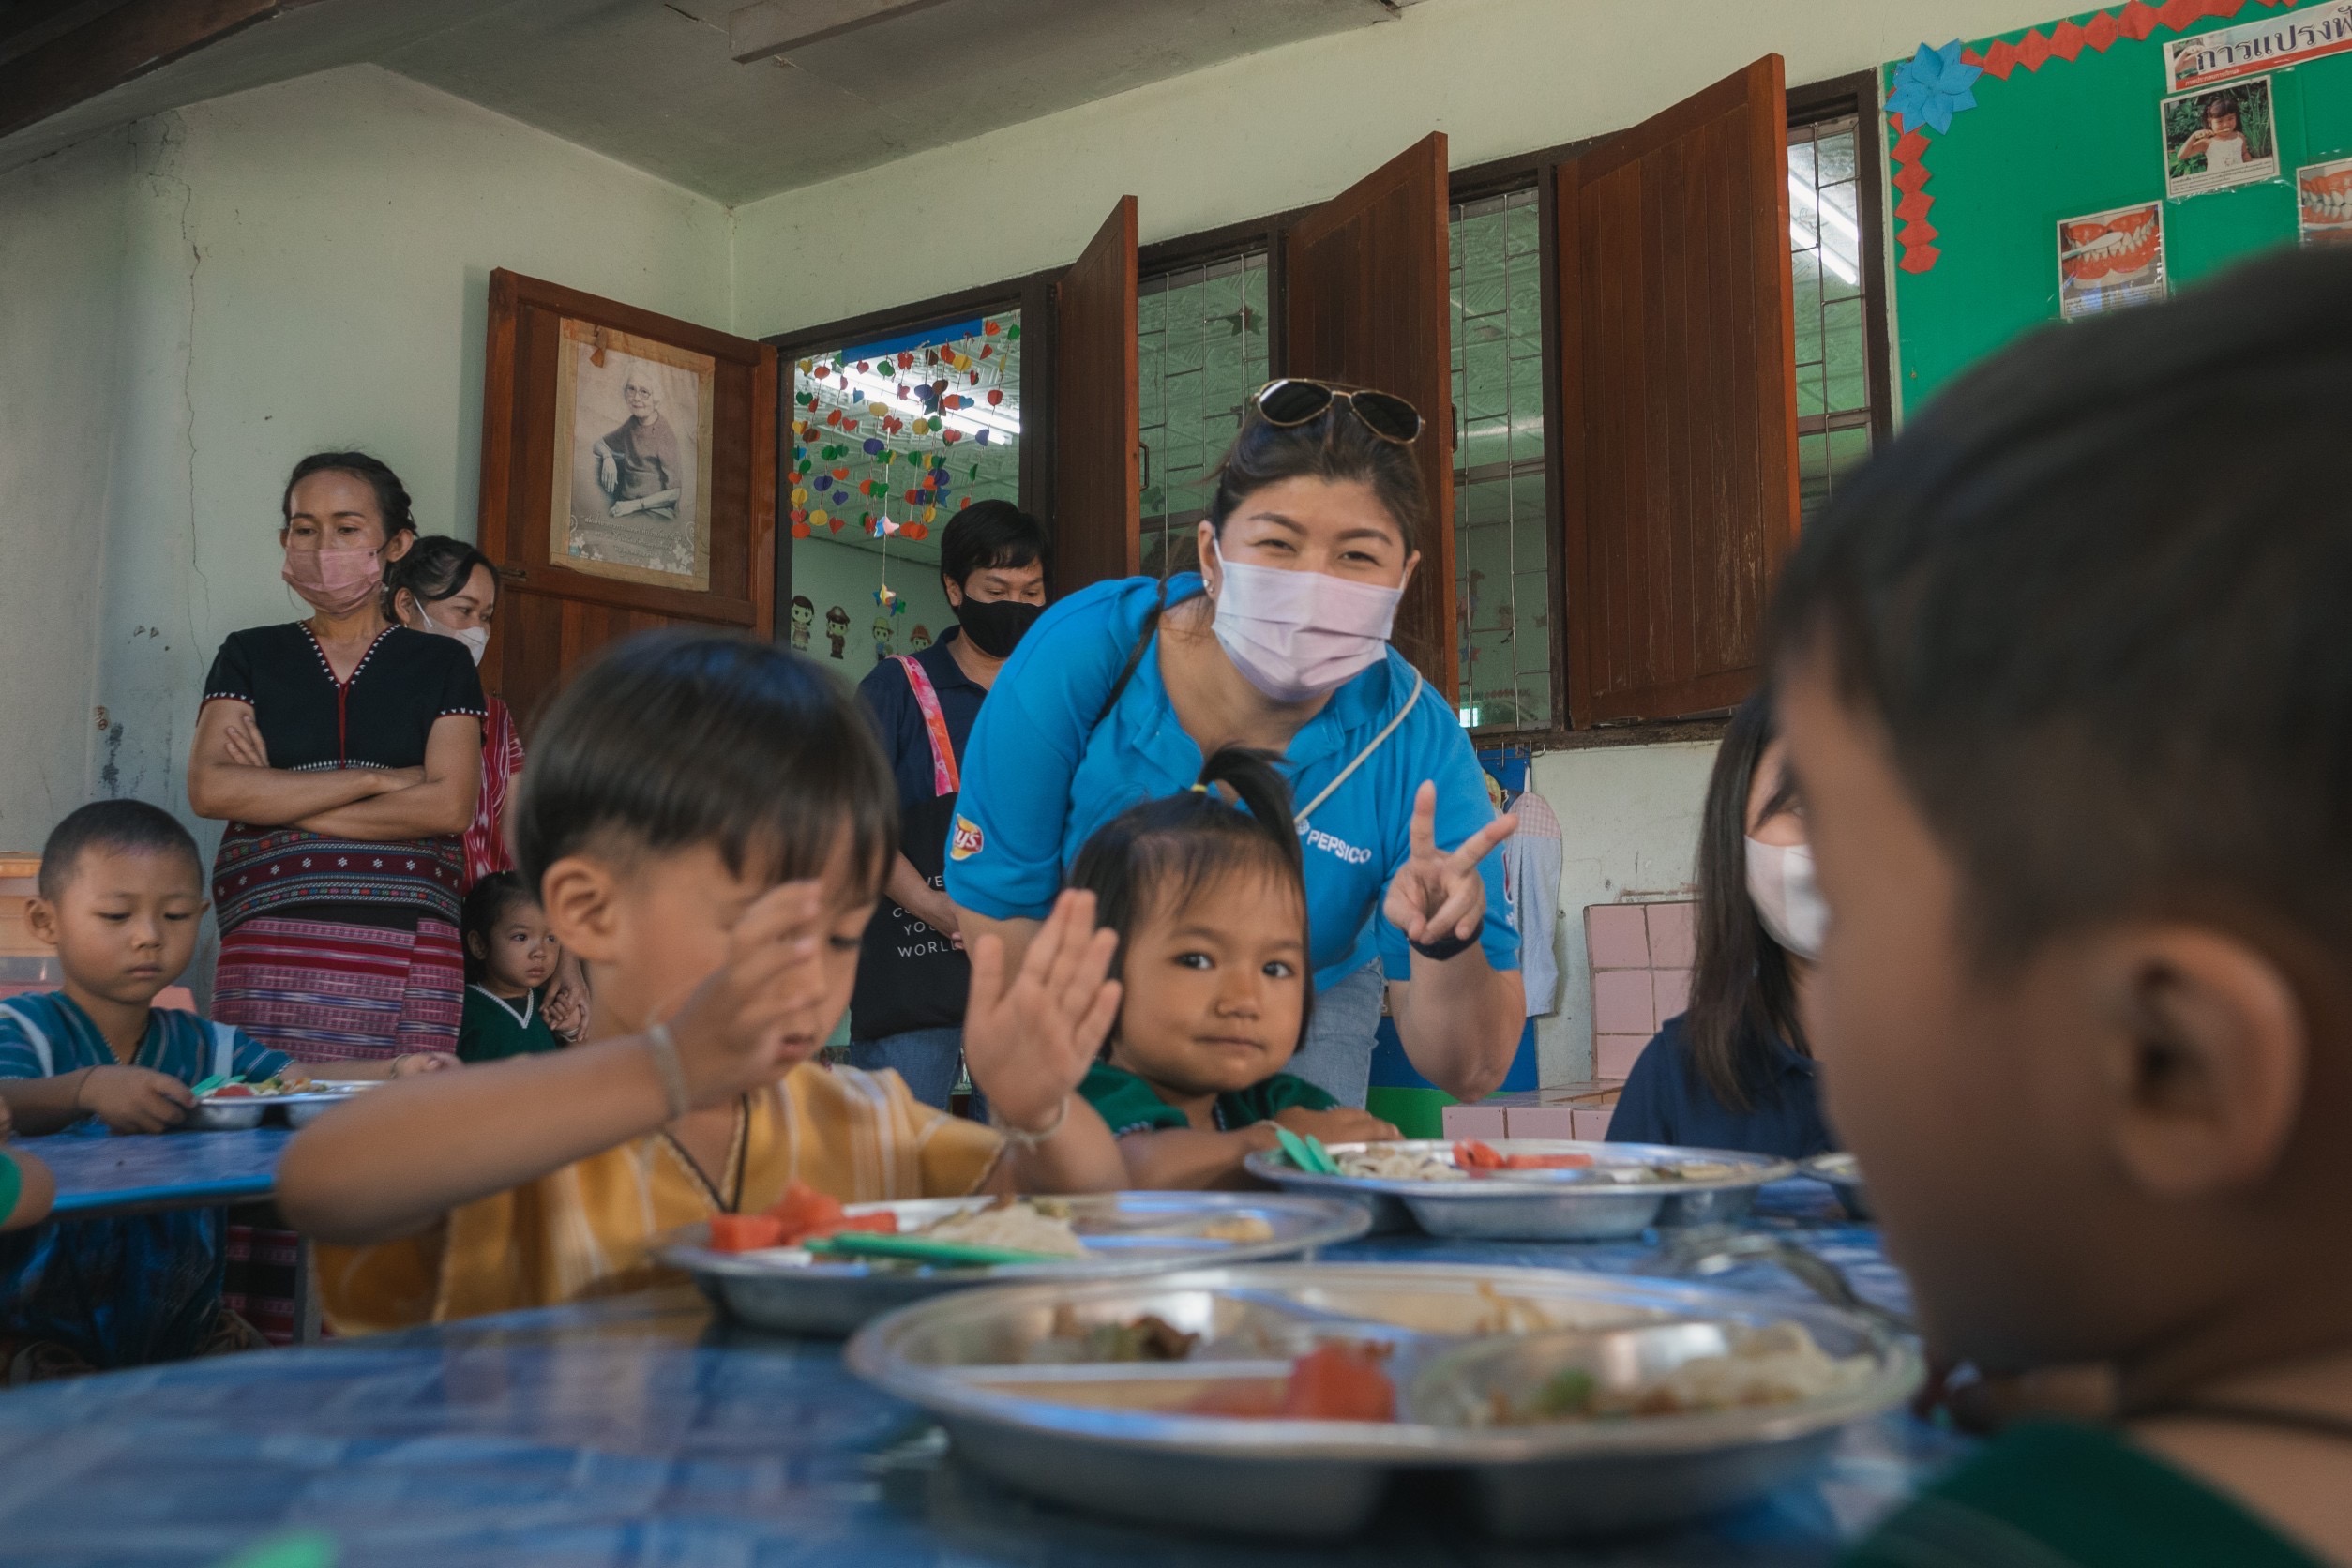 โครงการอาหารล้านมื้อเพื่อกำลังใจให้คนไทยสู้ภัยโควิด-19 หรือ Food for Good: Millions of Meals